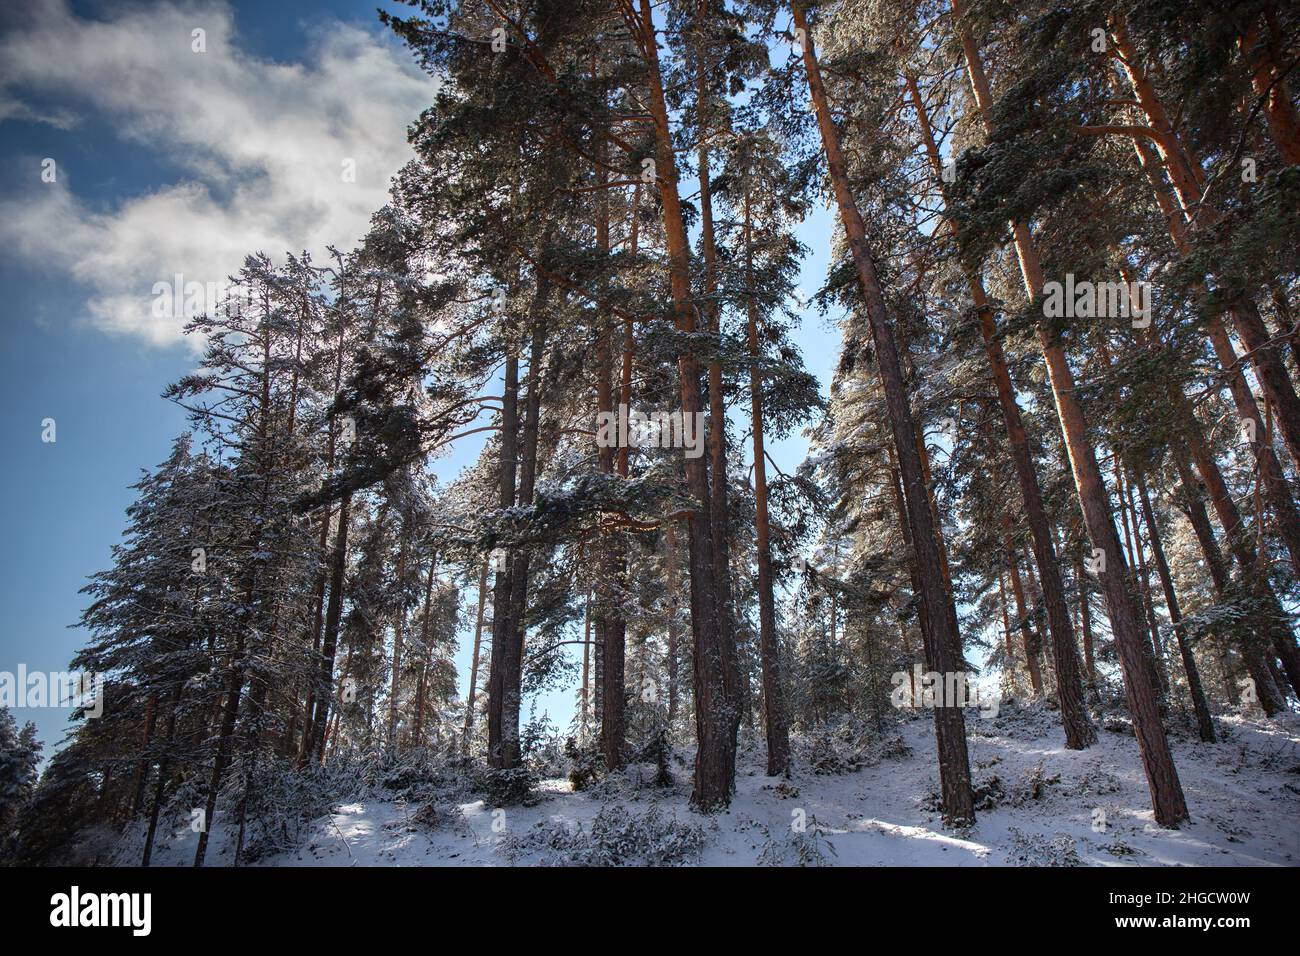 Paysage forestier enneigé avec des pins écossais, des arbres de Pinus sylvestris Banque D'Images